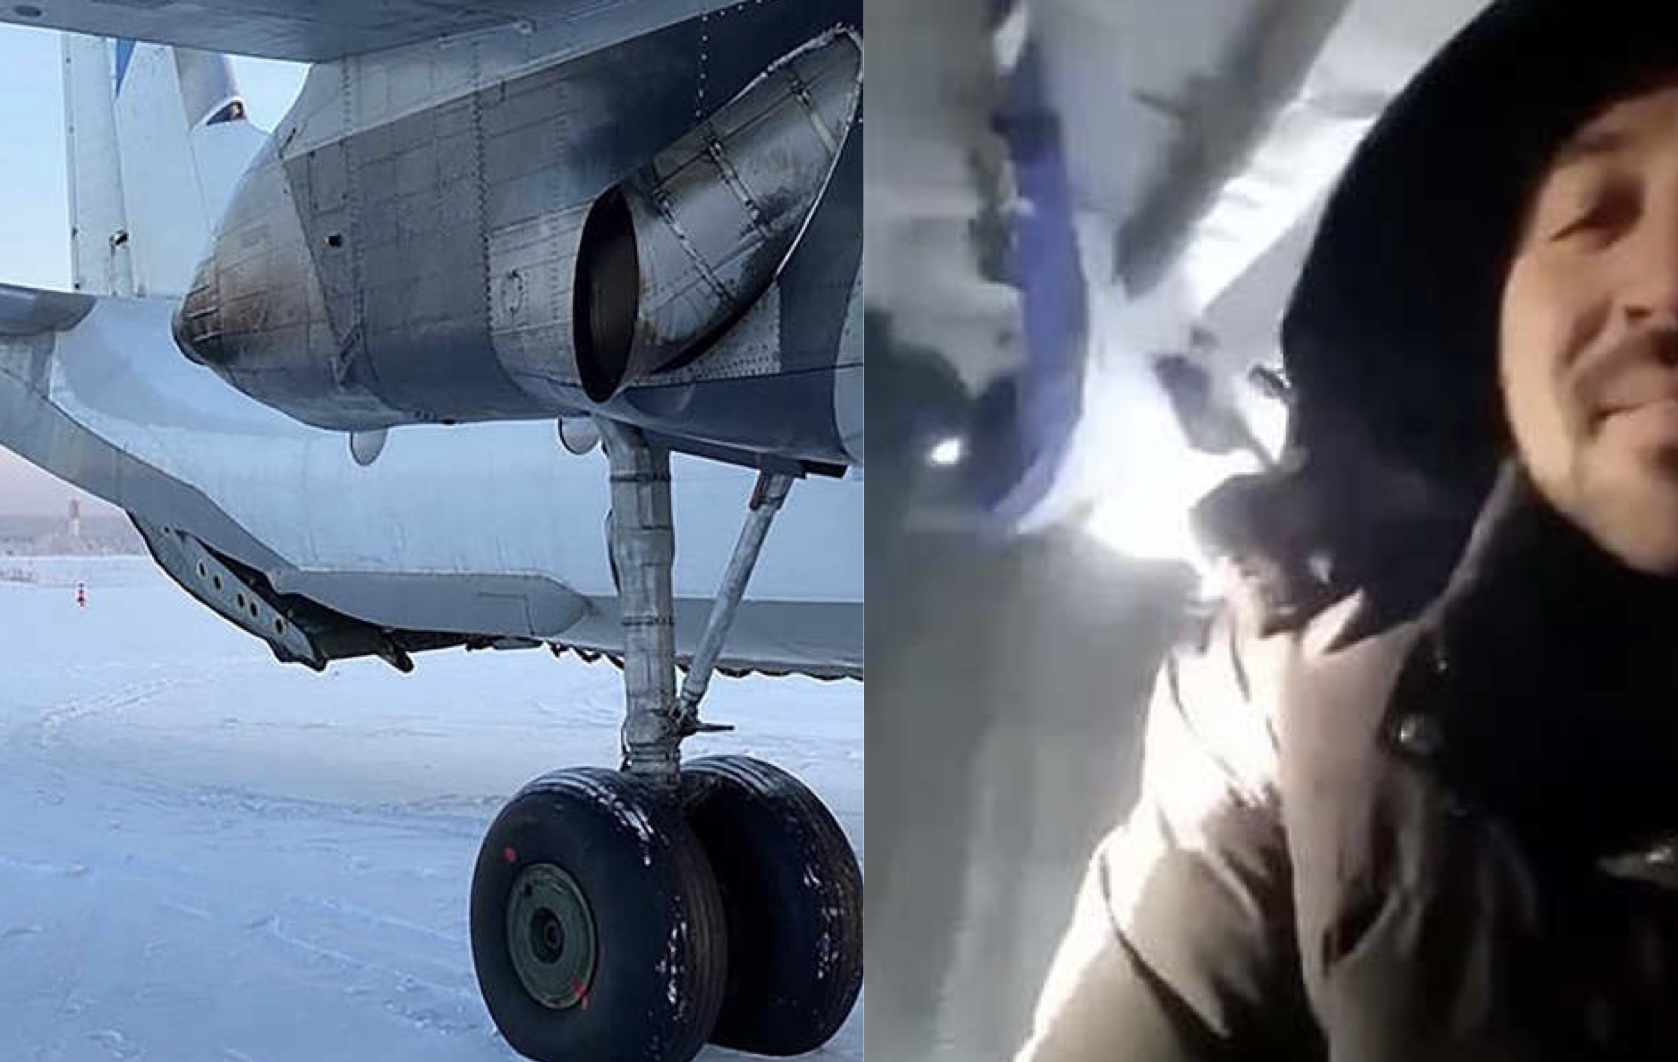 Panik dhe frikë gjatë fluturimit: Dera e avionit hapet papritur, piloti bën ulje emergjente